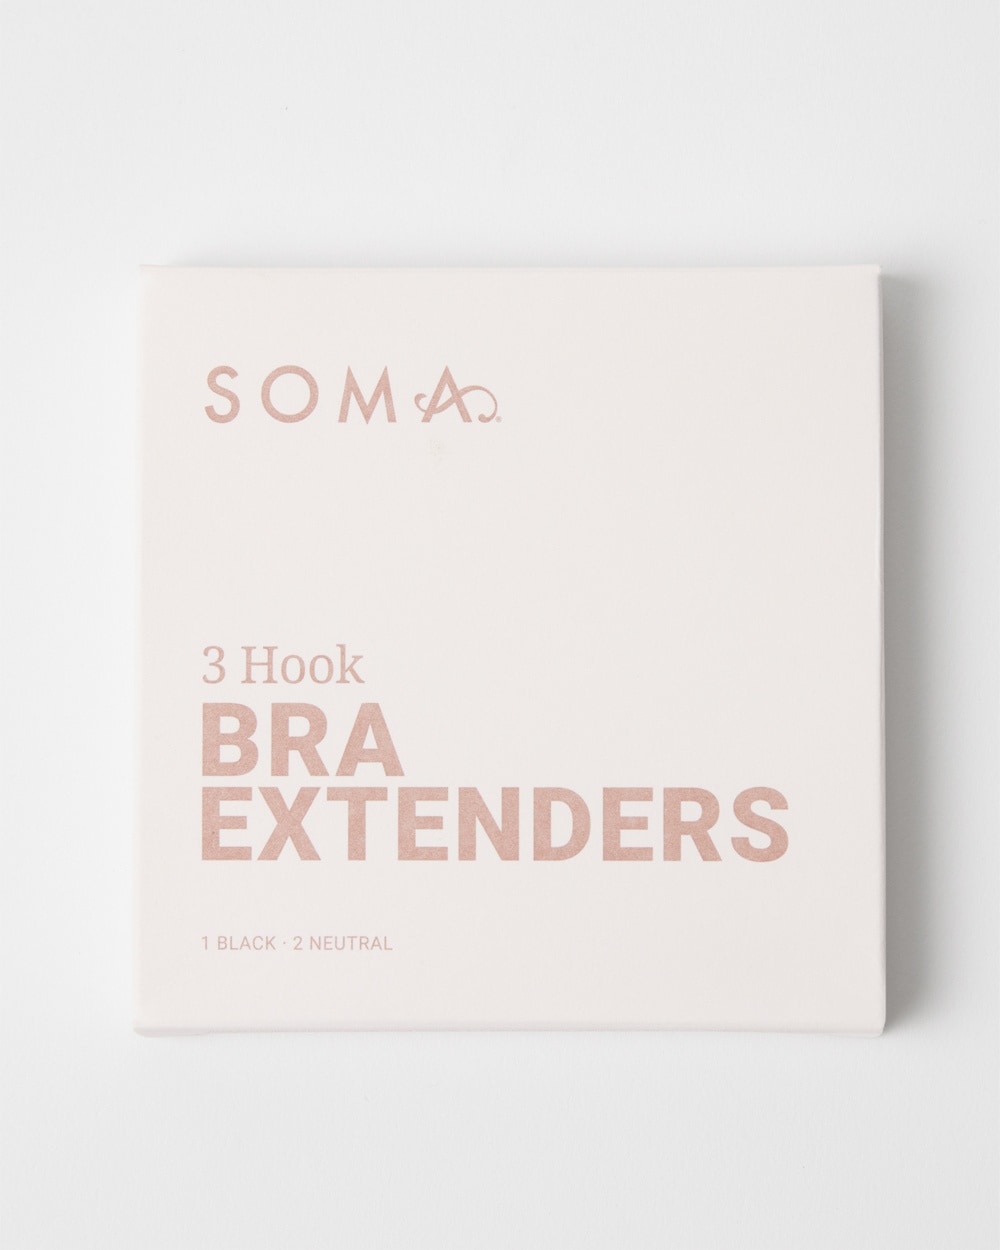 ME. by Bendon Bra Extenders 3 Hook Bra + Lingerie Solutions in